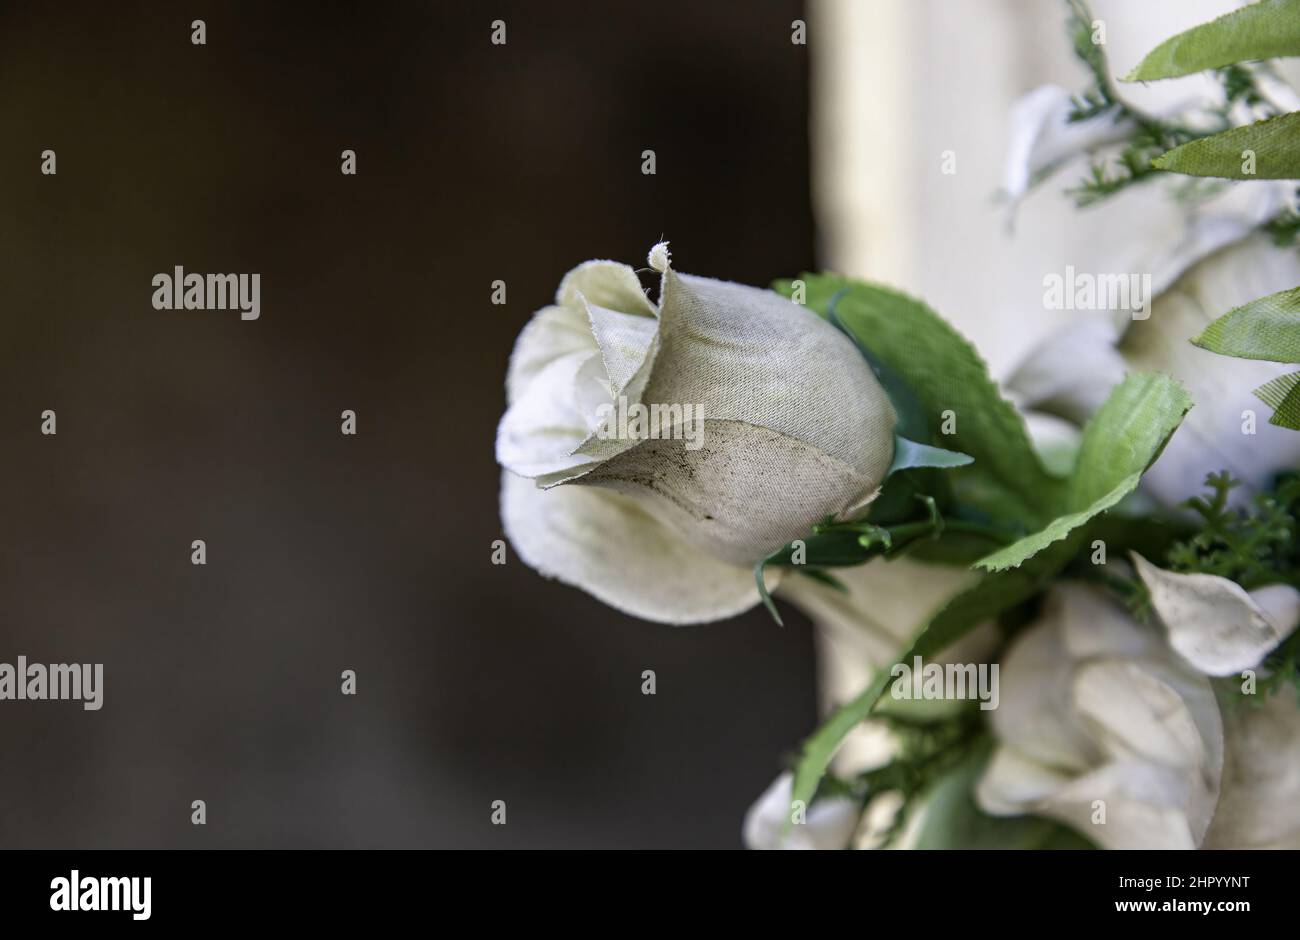 Particolare di fiori per ricordare i morti Foto Stock